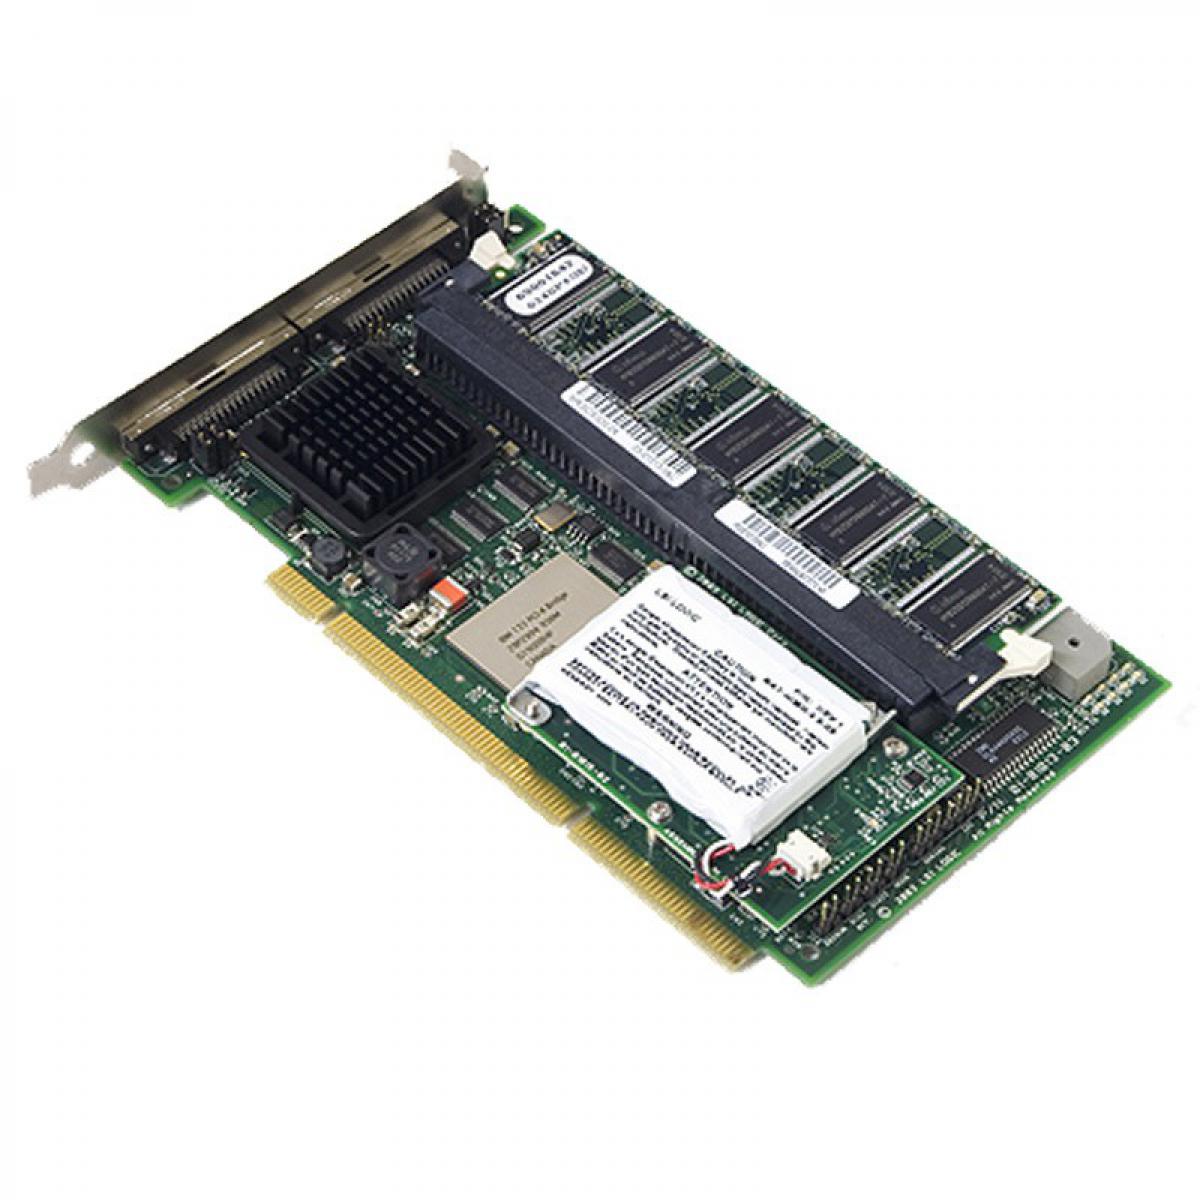 Lsi Logic - Carte PCI-X SCSI Ultra320 LSI Logic 320-2X 128Mb MegaRAID Controller 133Mhz - Carte réseau